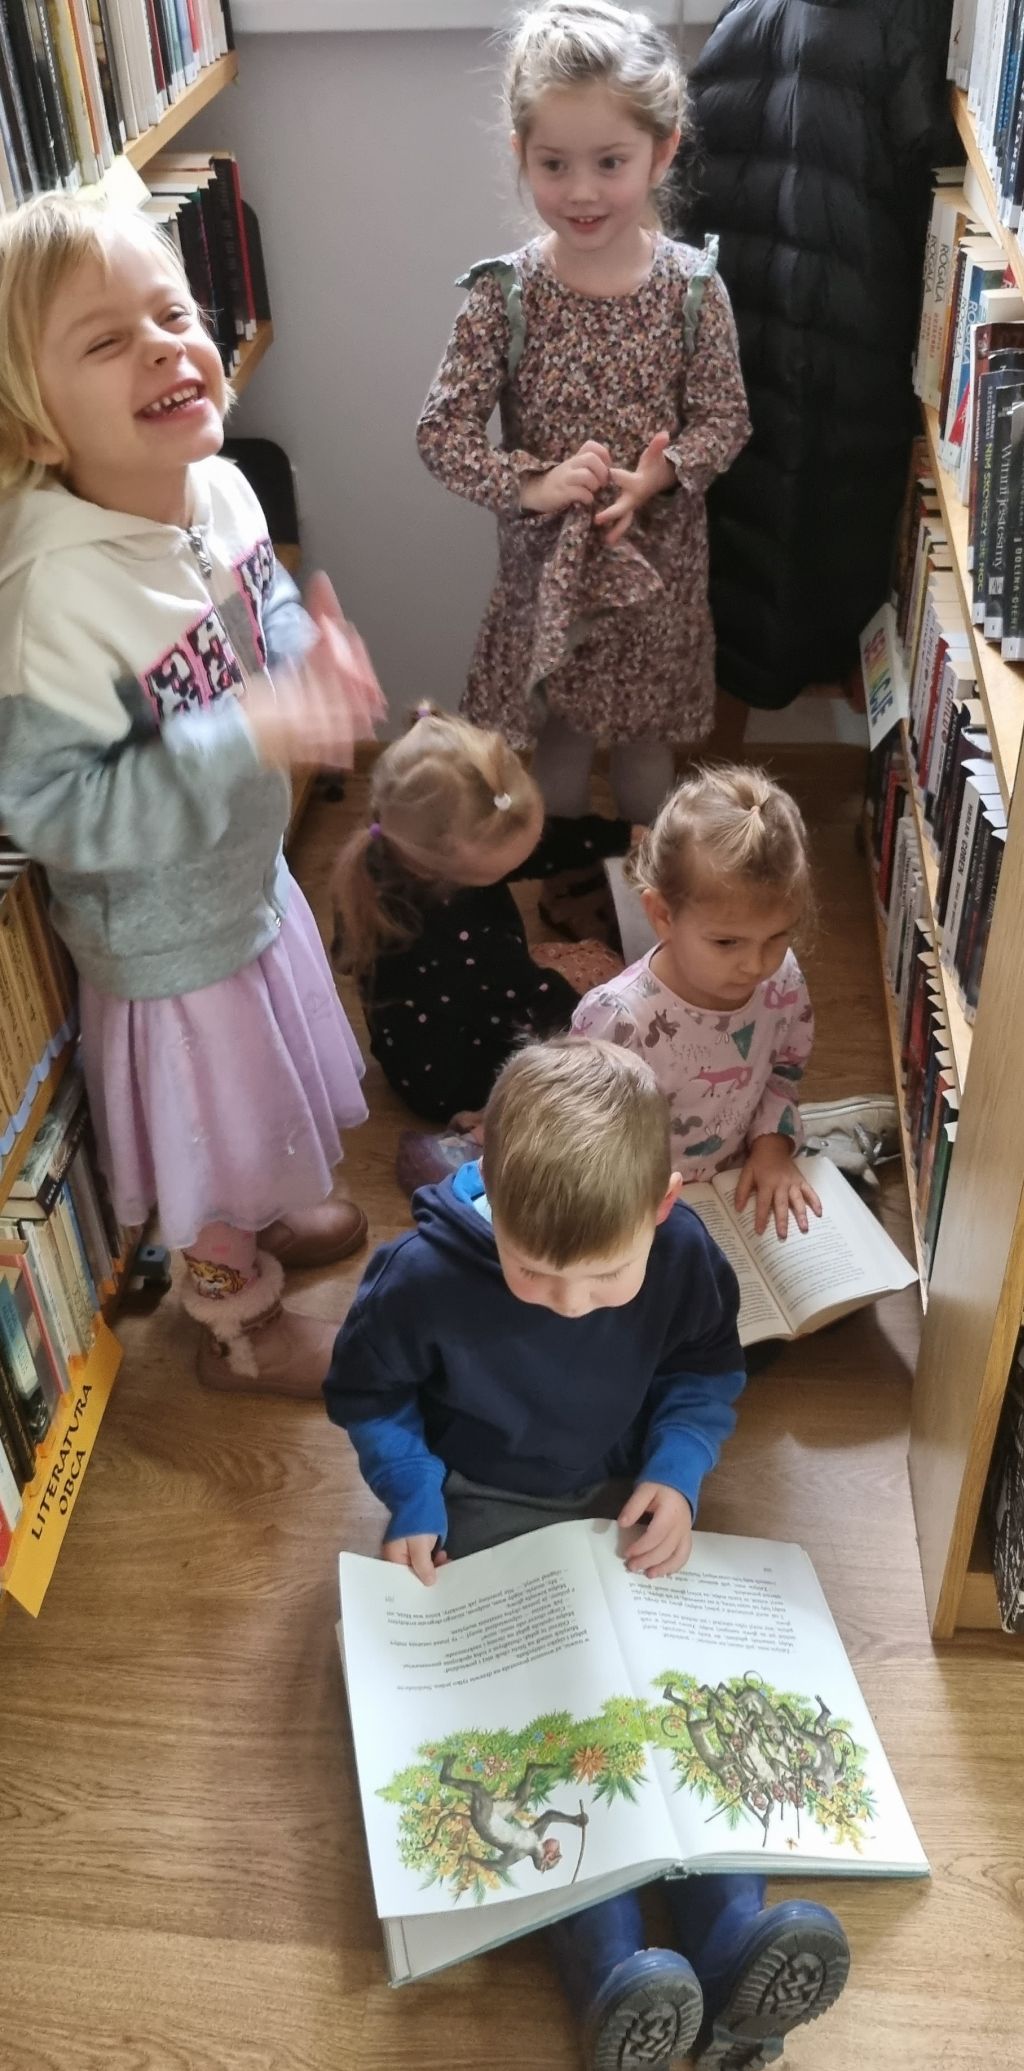 Dzieci zwiedzają bibliotekę.